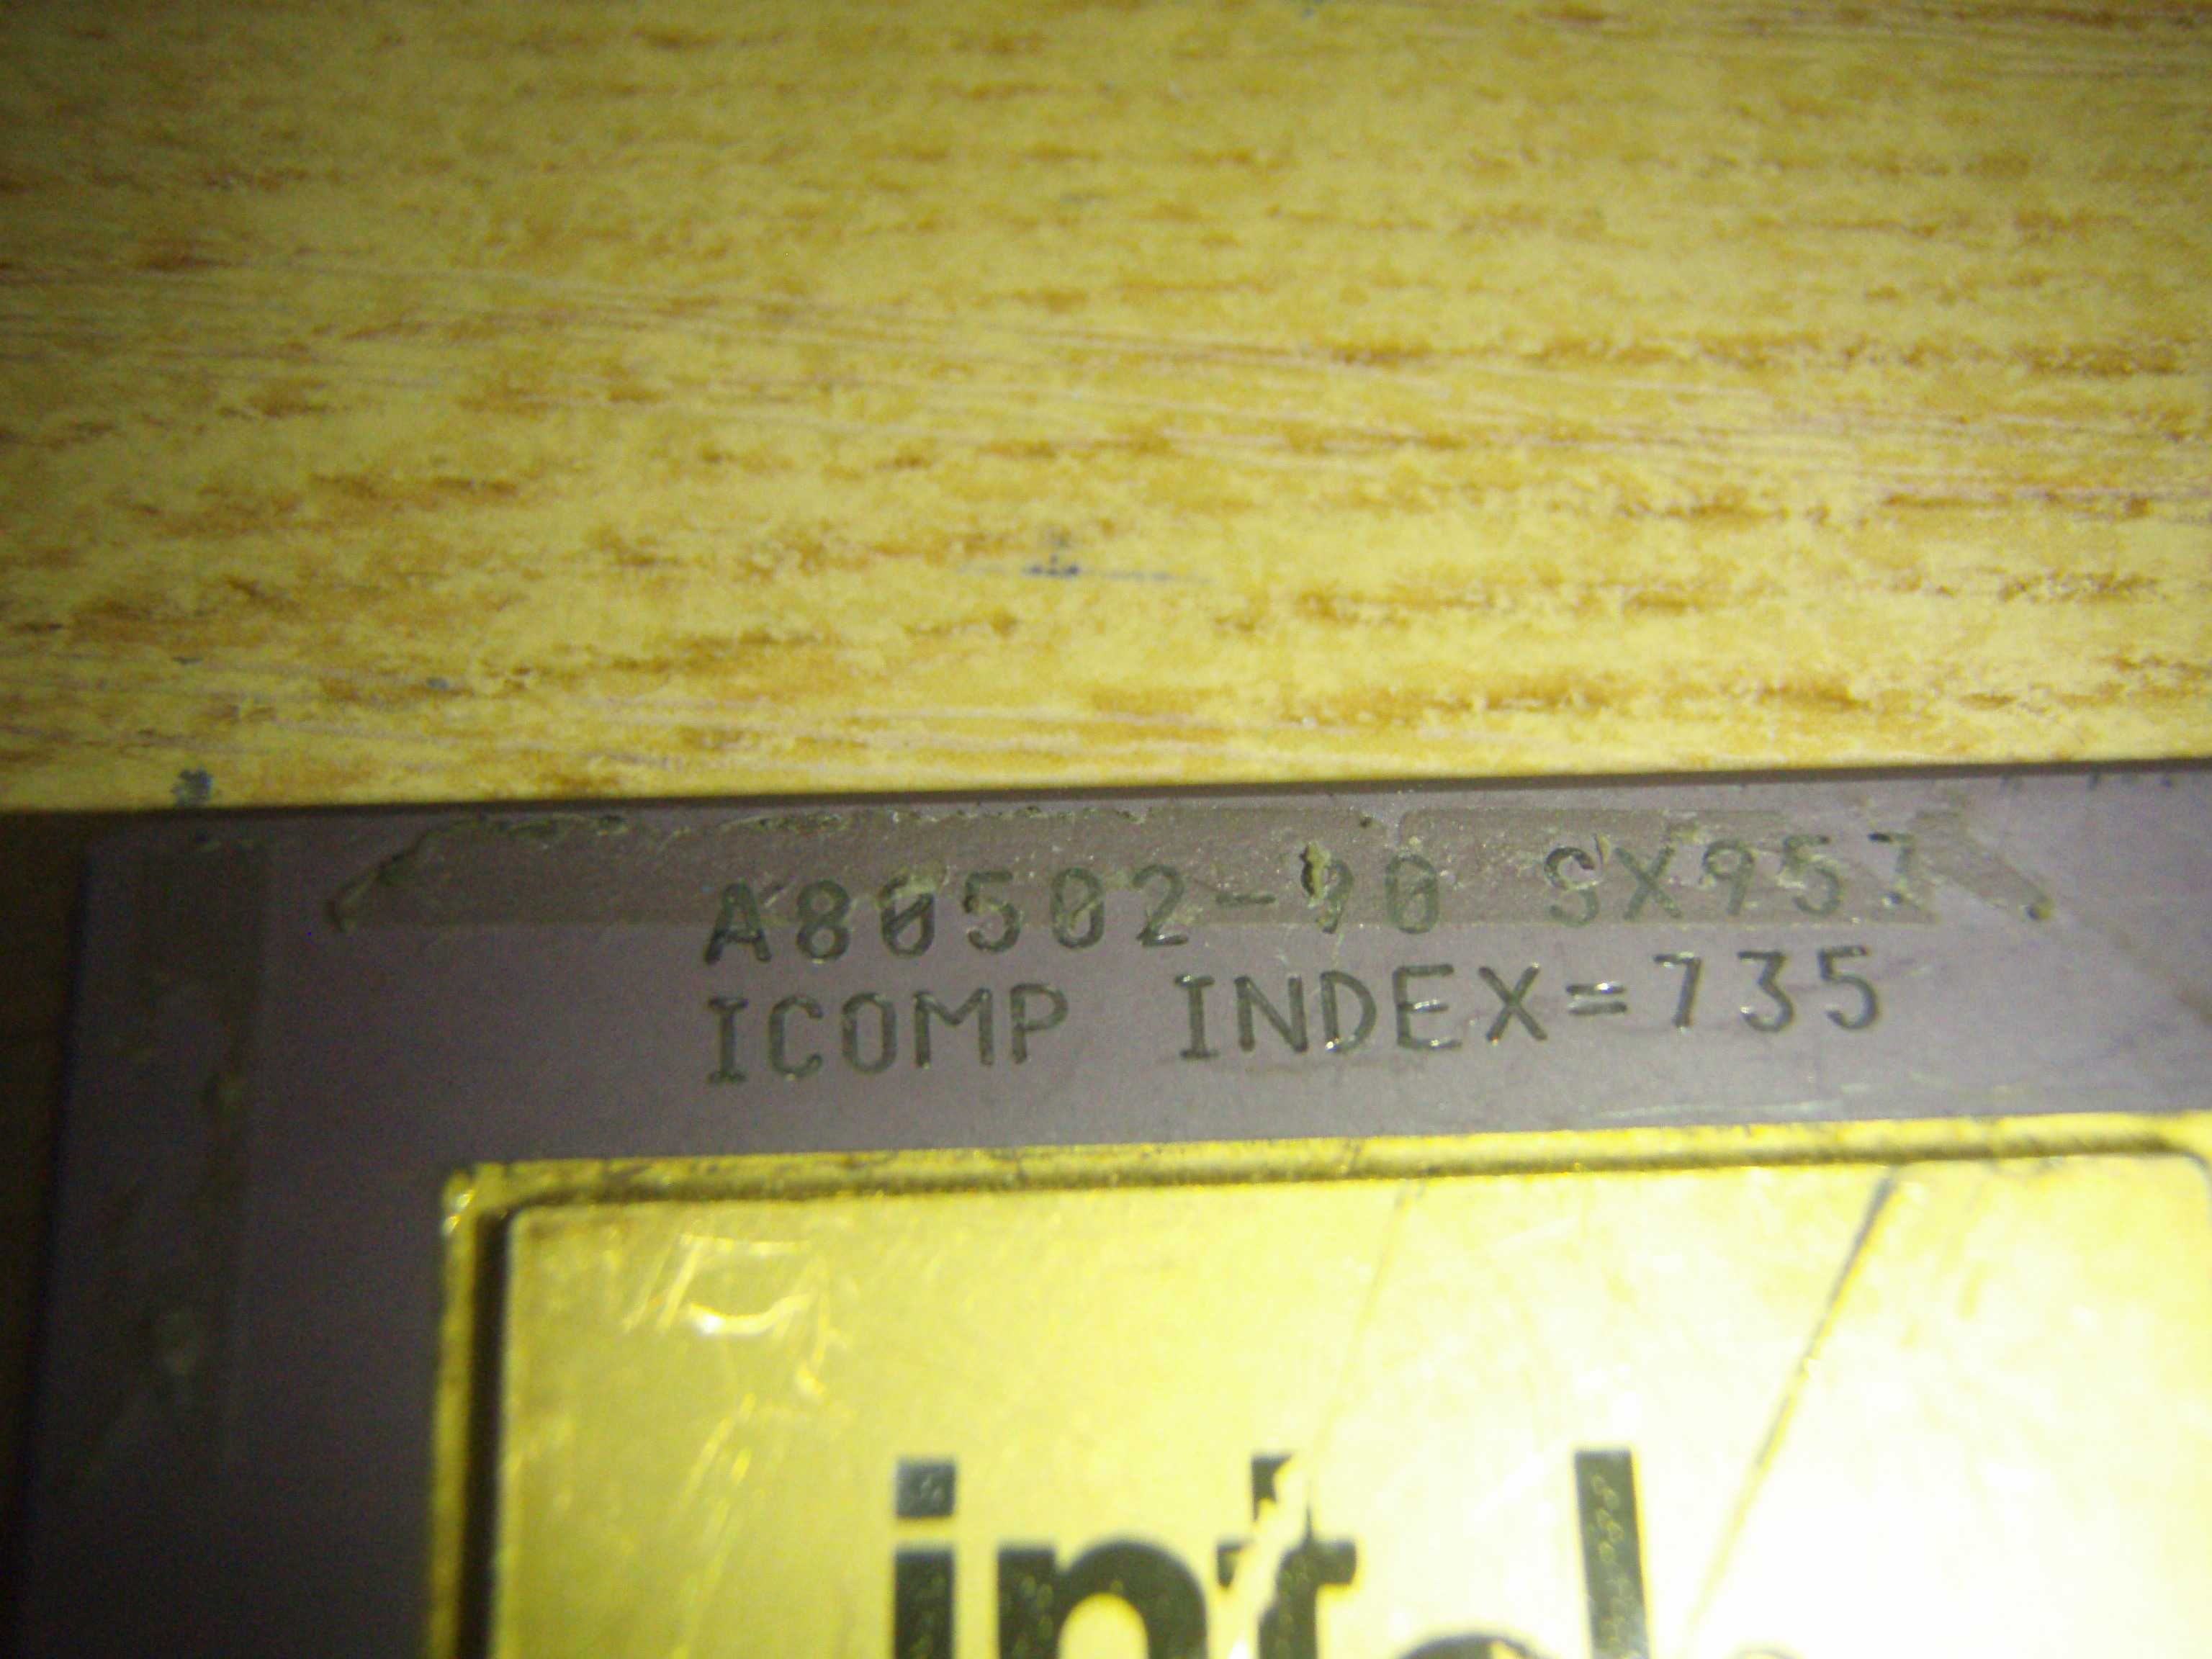 Procesor intel Pentium 90 A80502-90 SX957, pentru colectie sau aur
|